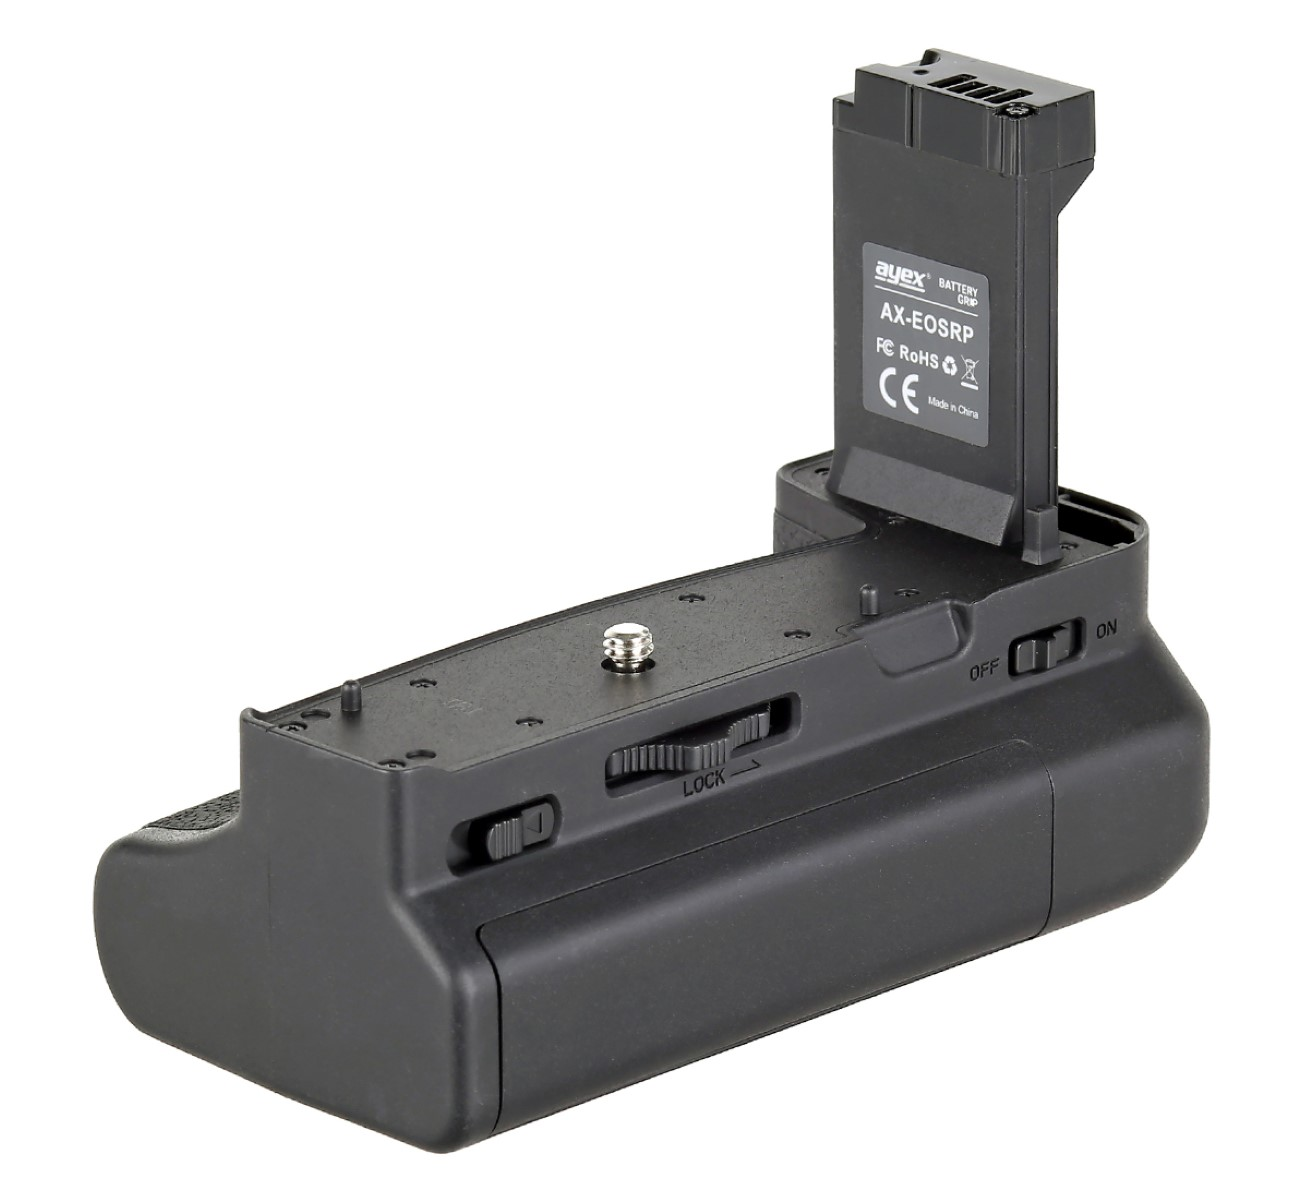 Batteriegrifff mit EG-E1, Batteriegriff, ähnlich AYEX RP Handgriff Canon Auslöseknopf Black R8 EOS